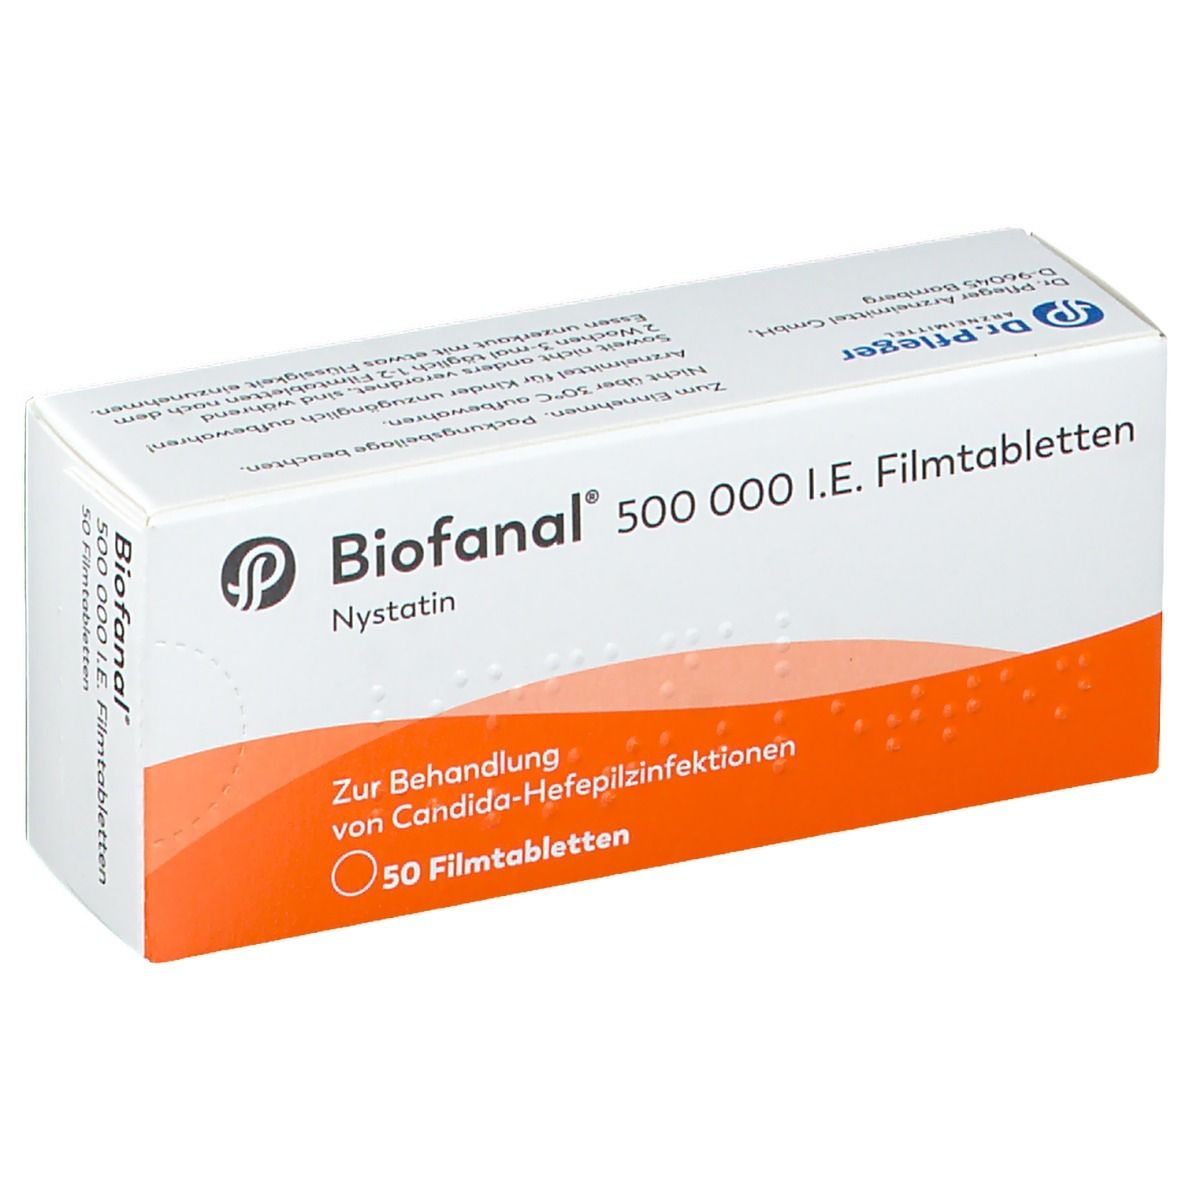 Biofanal® 500.000 IE